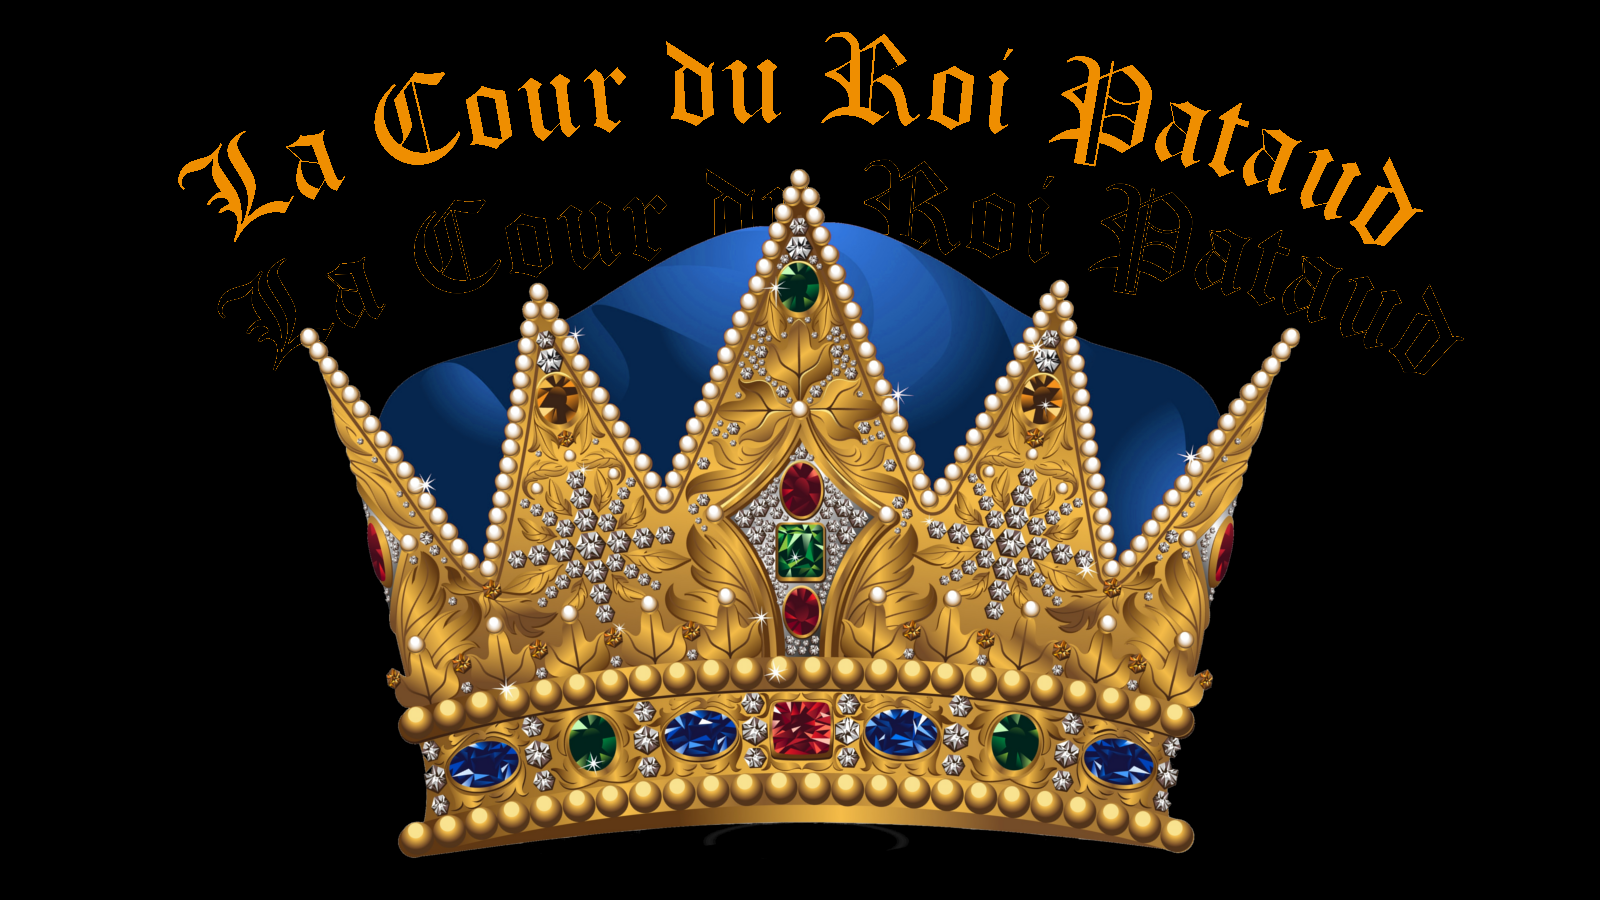 La cour du roi Pataud